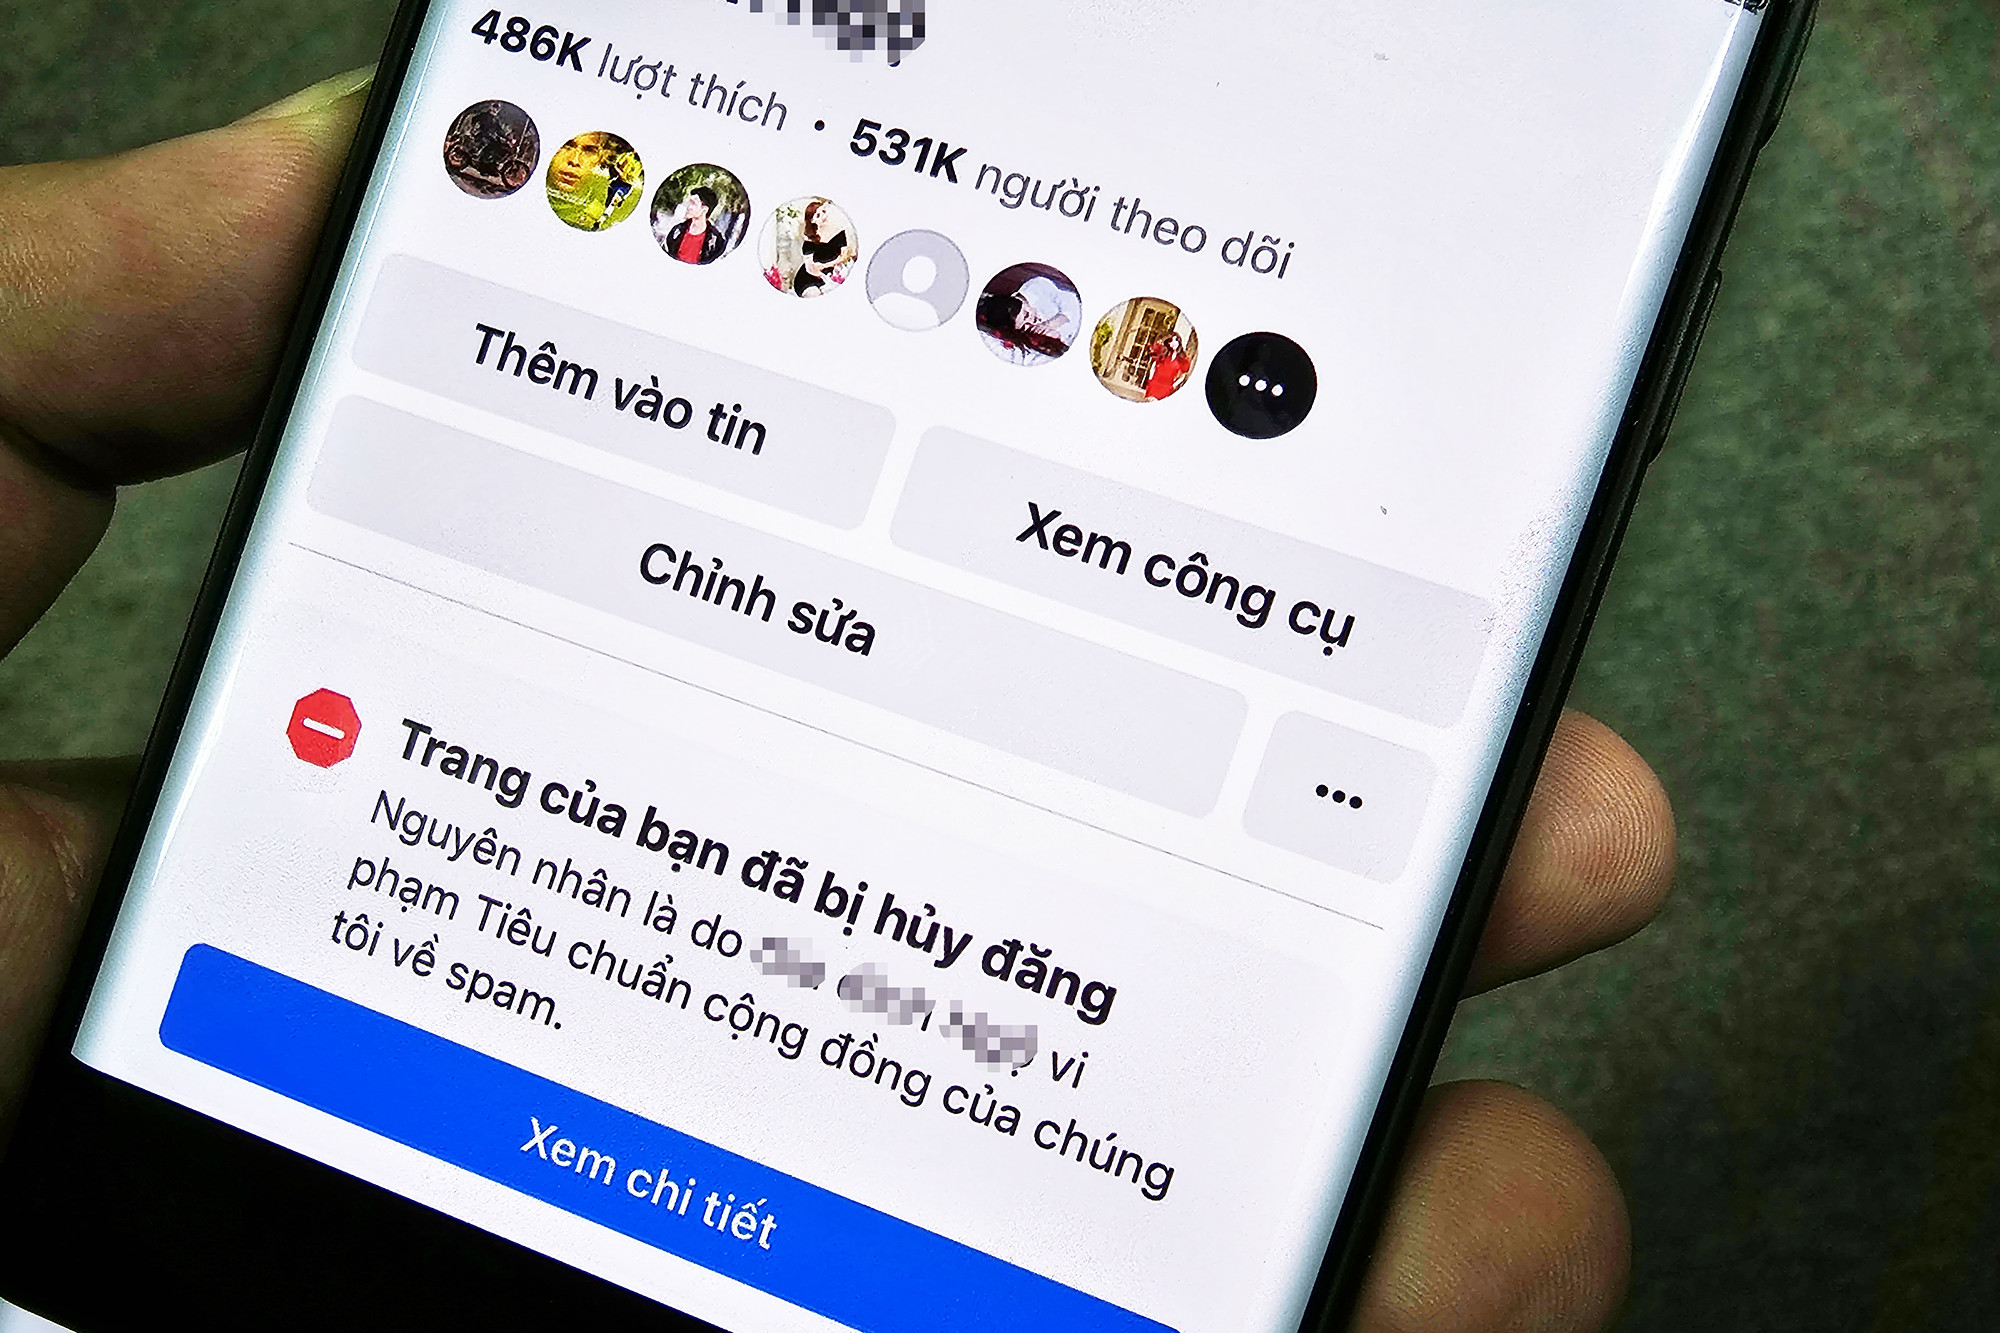 Hàng trăm fanpage Facebook Việt Nam bị khóa trong đêm